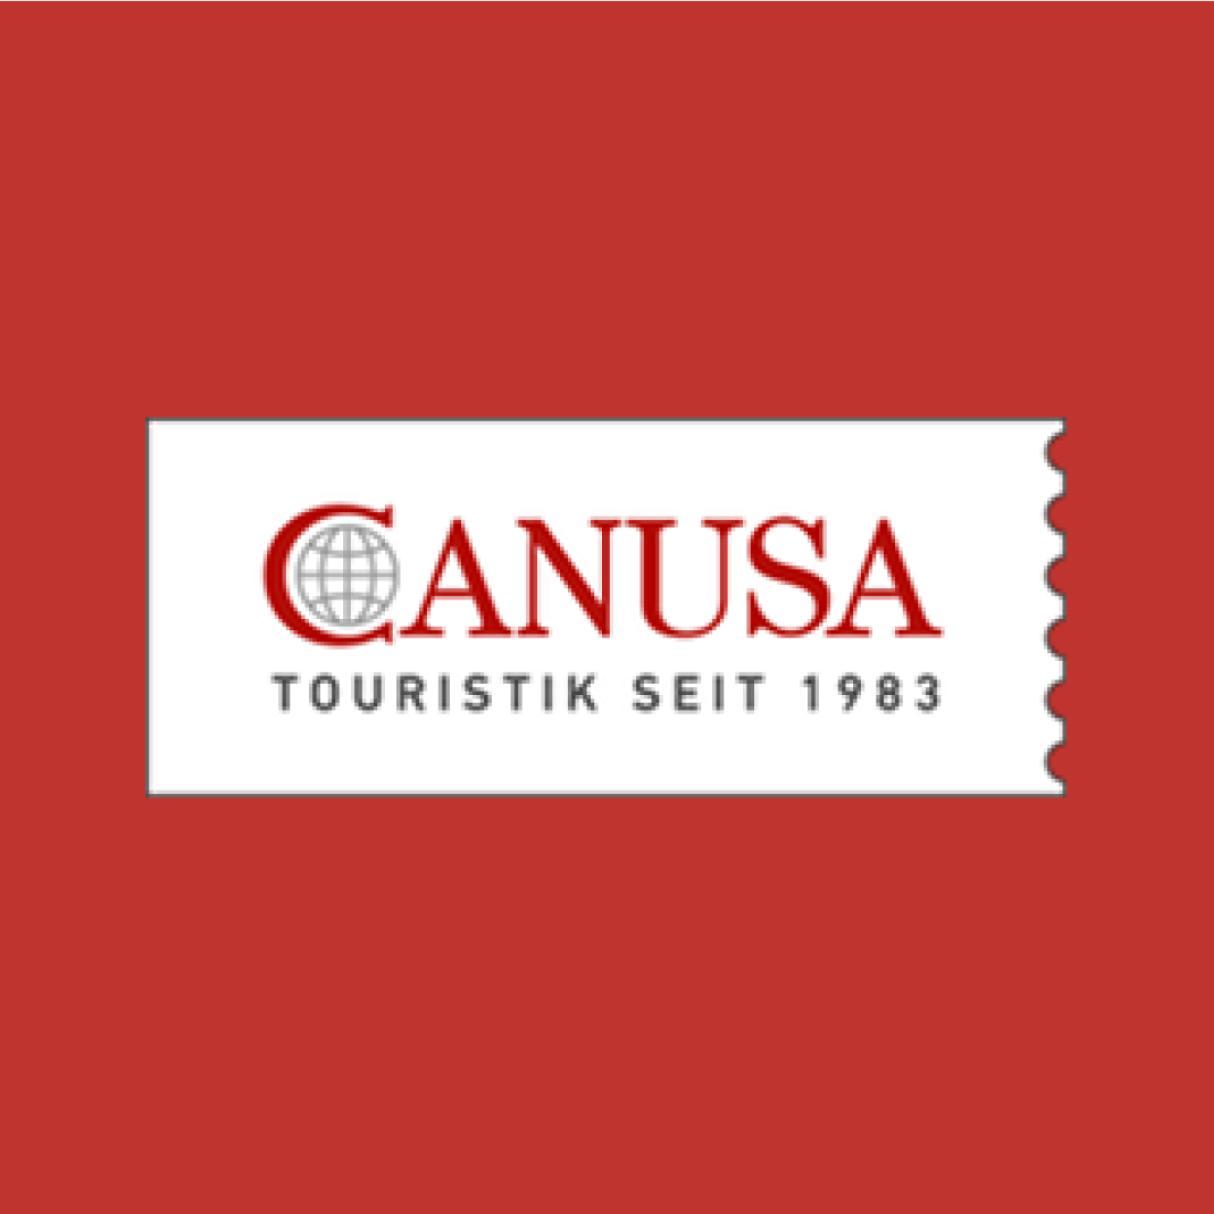 CanUSA logo